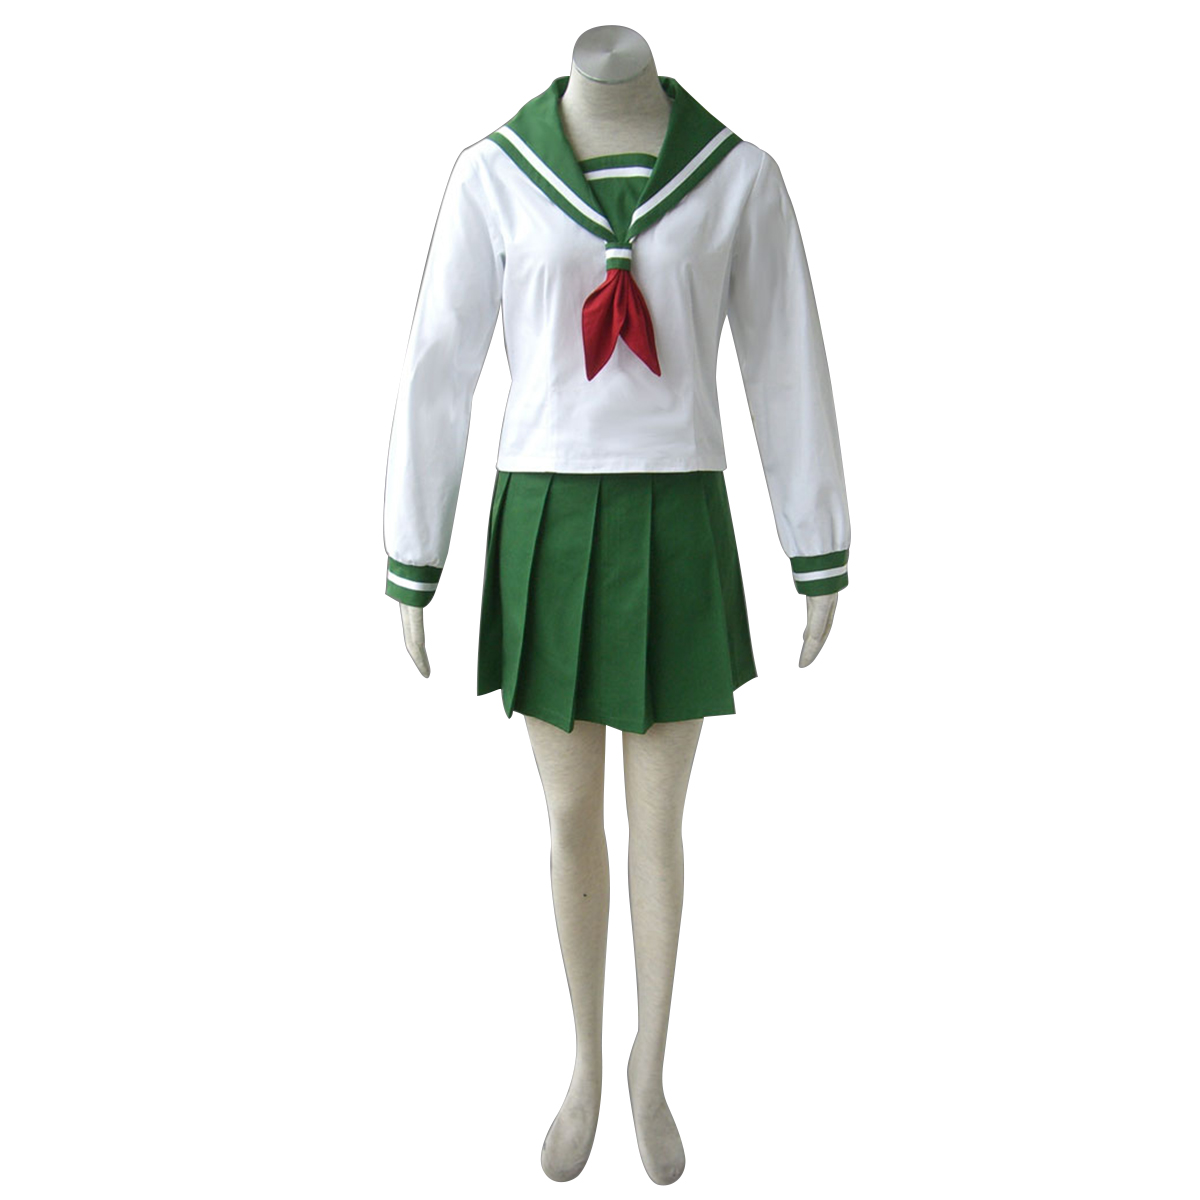 Inuyasha Kagome Higurashi 1 Sailor Anime Cosplay Costumes Outfit